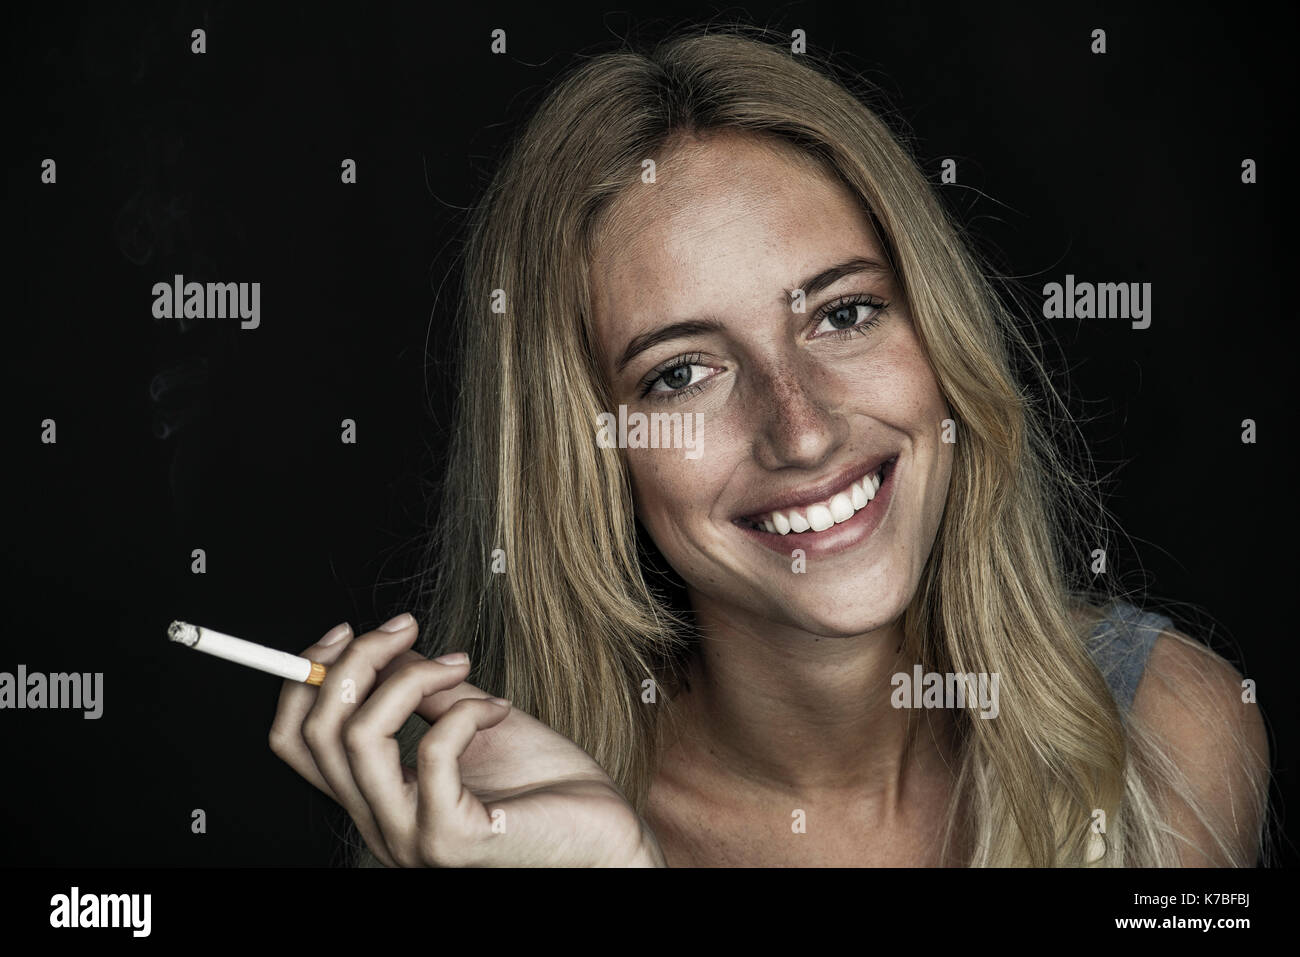 Junge Frau mit Zigarette und freundlich lächelnd, Porträt Stockfoto